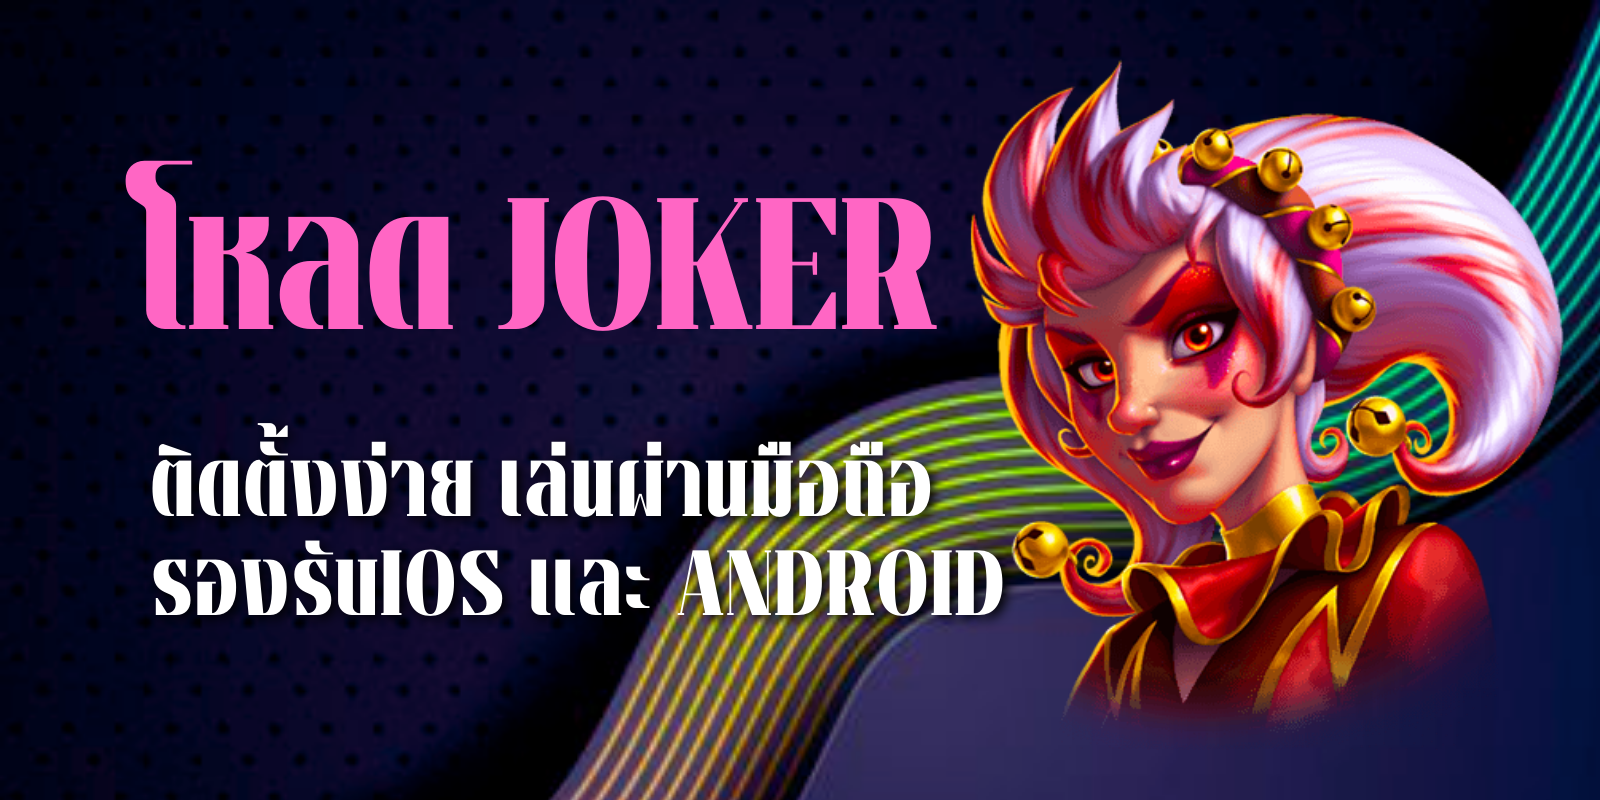 โหลด joker ติดตั้งง่าย เล่นผ่านมือถือ รองรับIOSและAndroid